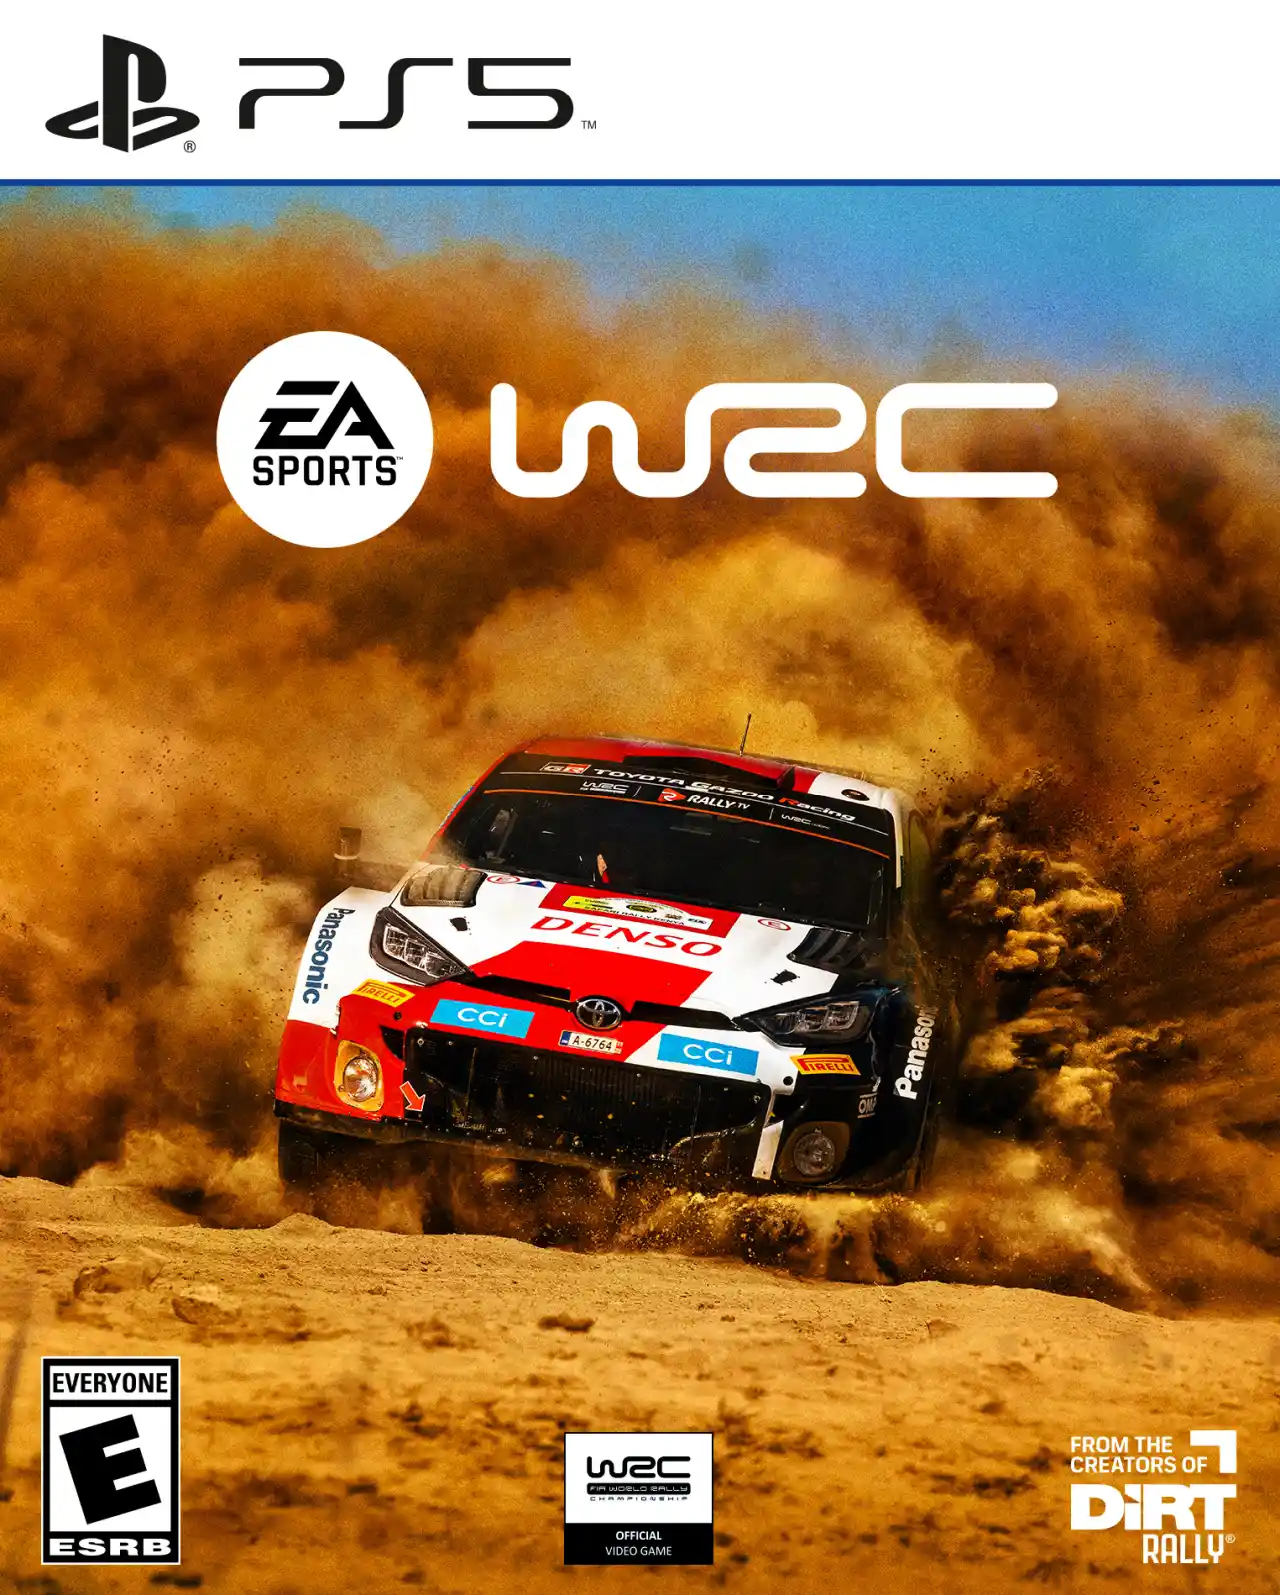 EA Sports WRC è disponibile su PC, PS5 e Series X/S: trailer di lancio e voti recensioni su Metacritic